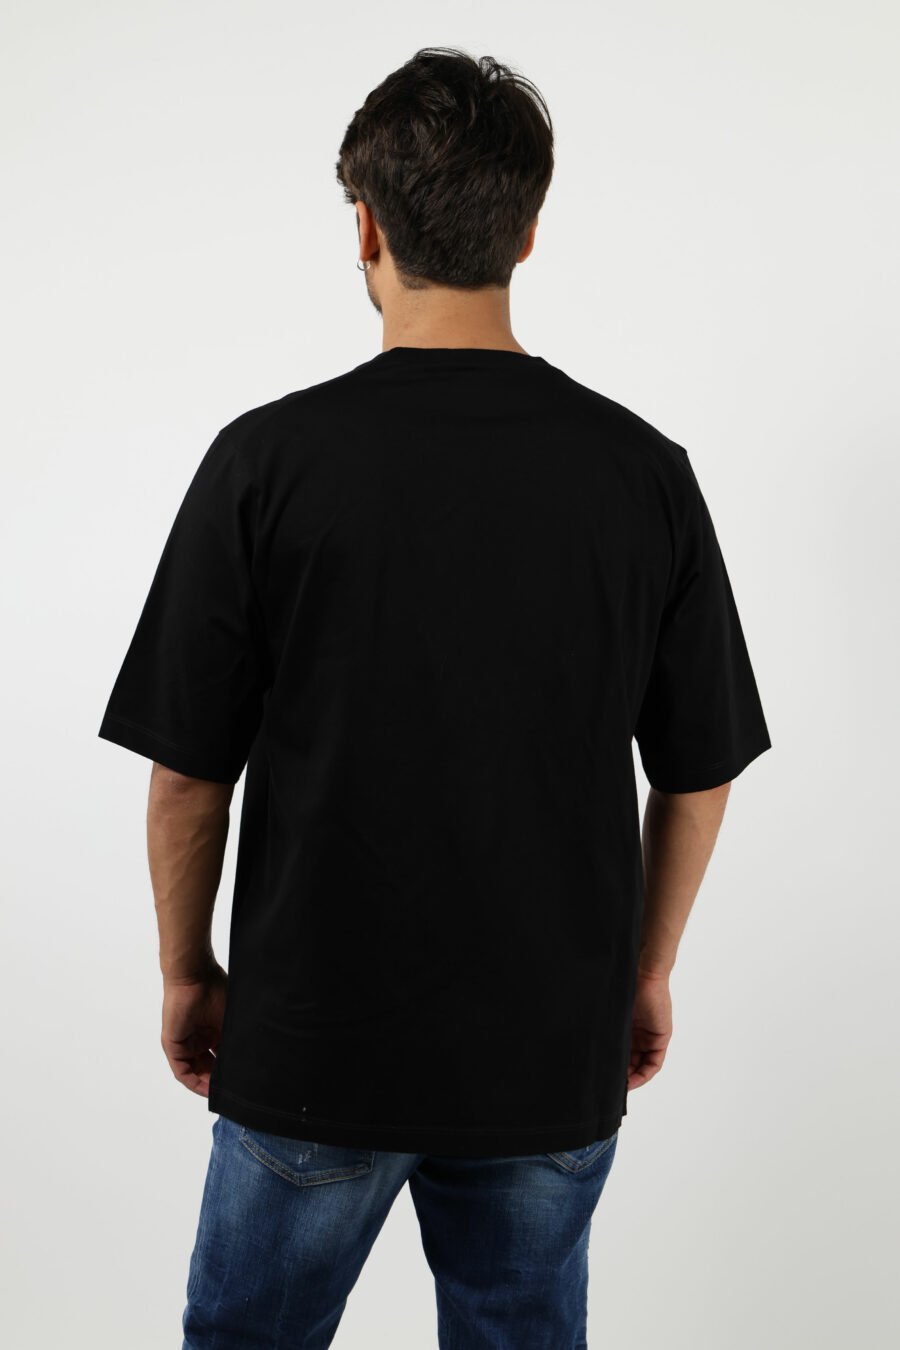 Camiseta negra con maxilogo "canadian team 1995" - number14480